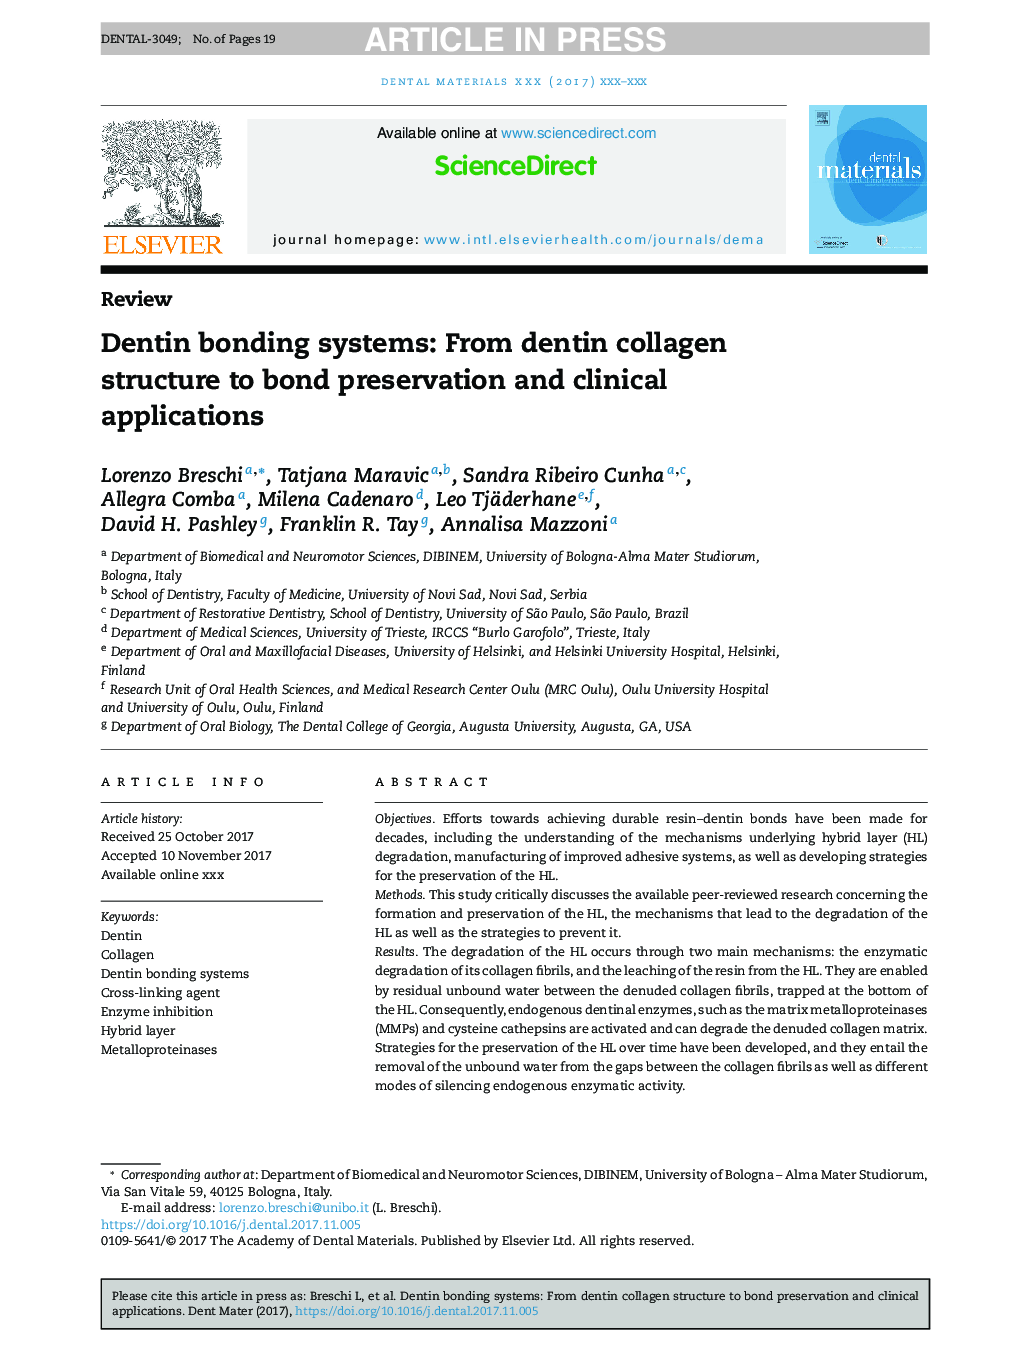 سیستم های باندینگ دنتین: از ساختار کلاژن دنتین تا حفظ باند و کاربرد بالینی 